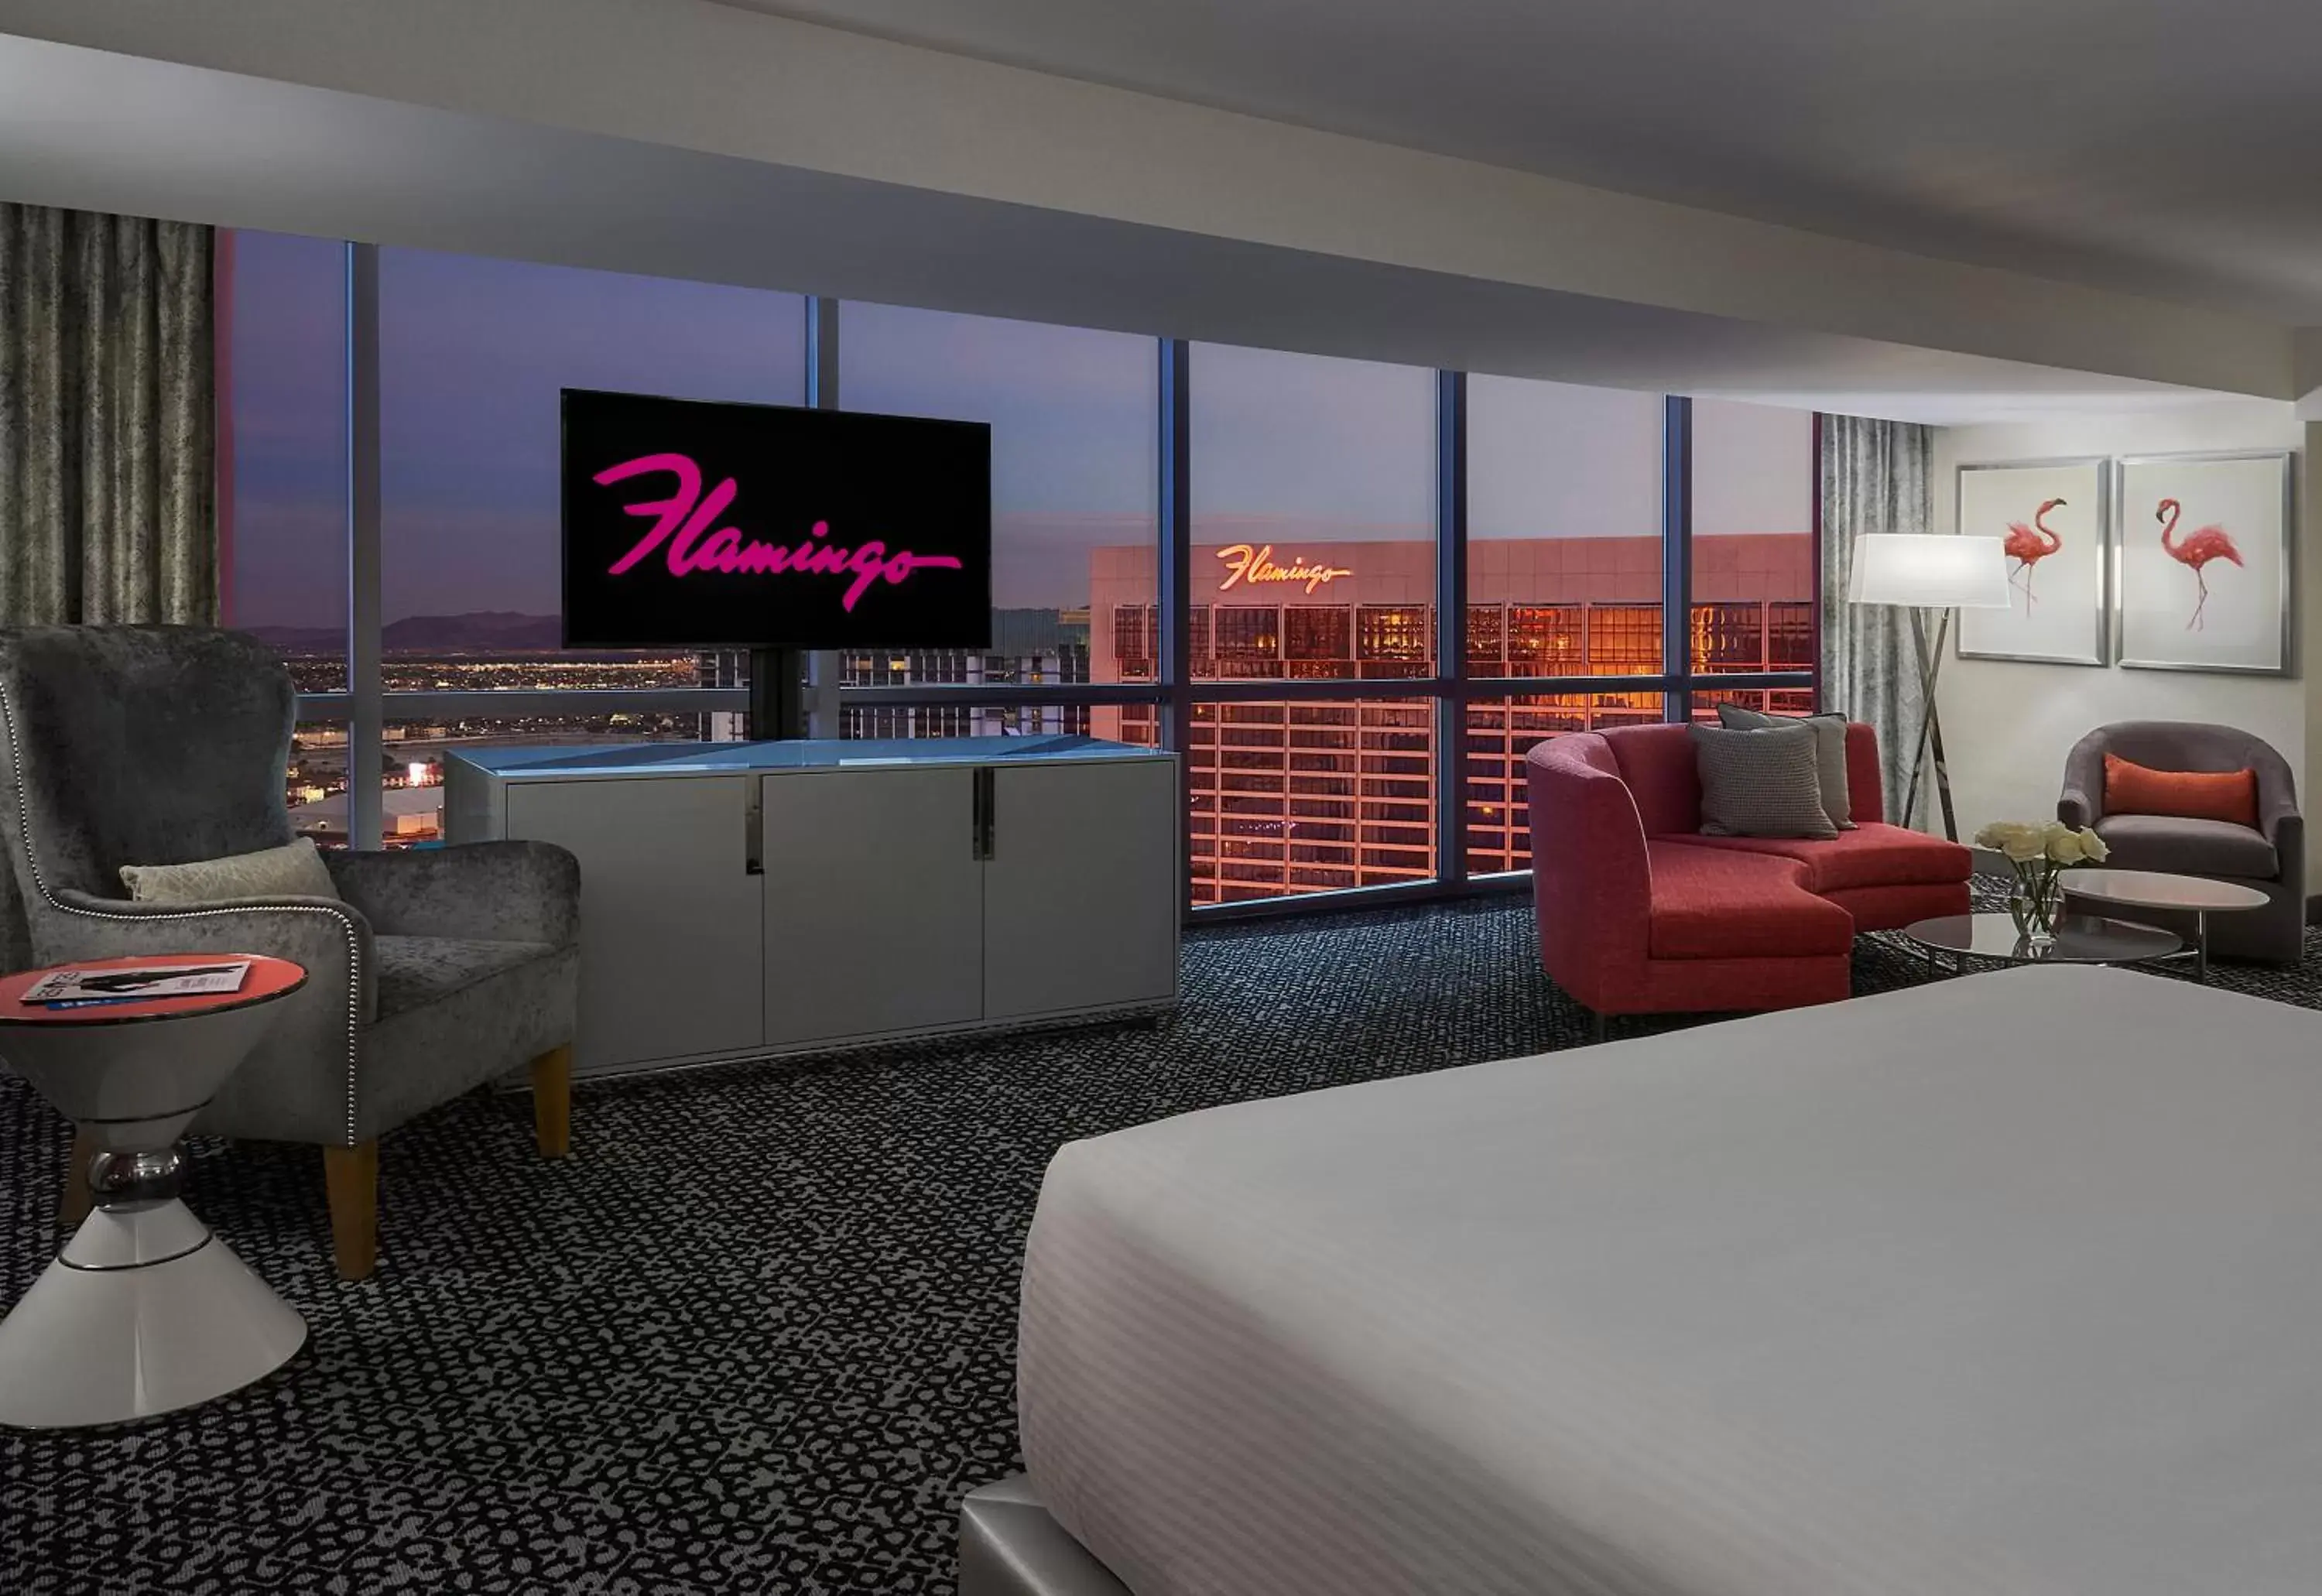 Flamingo Premium Room, 1 King, Non-Smoking in Paris Las Vegas Hotel & Casino